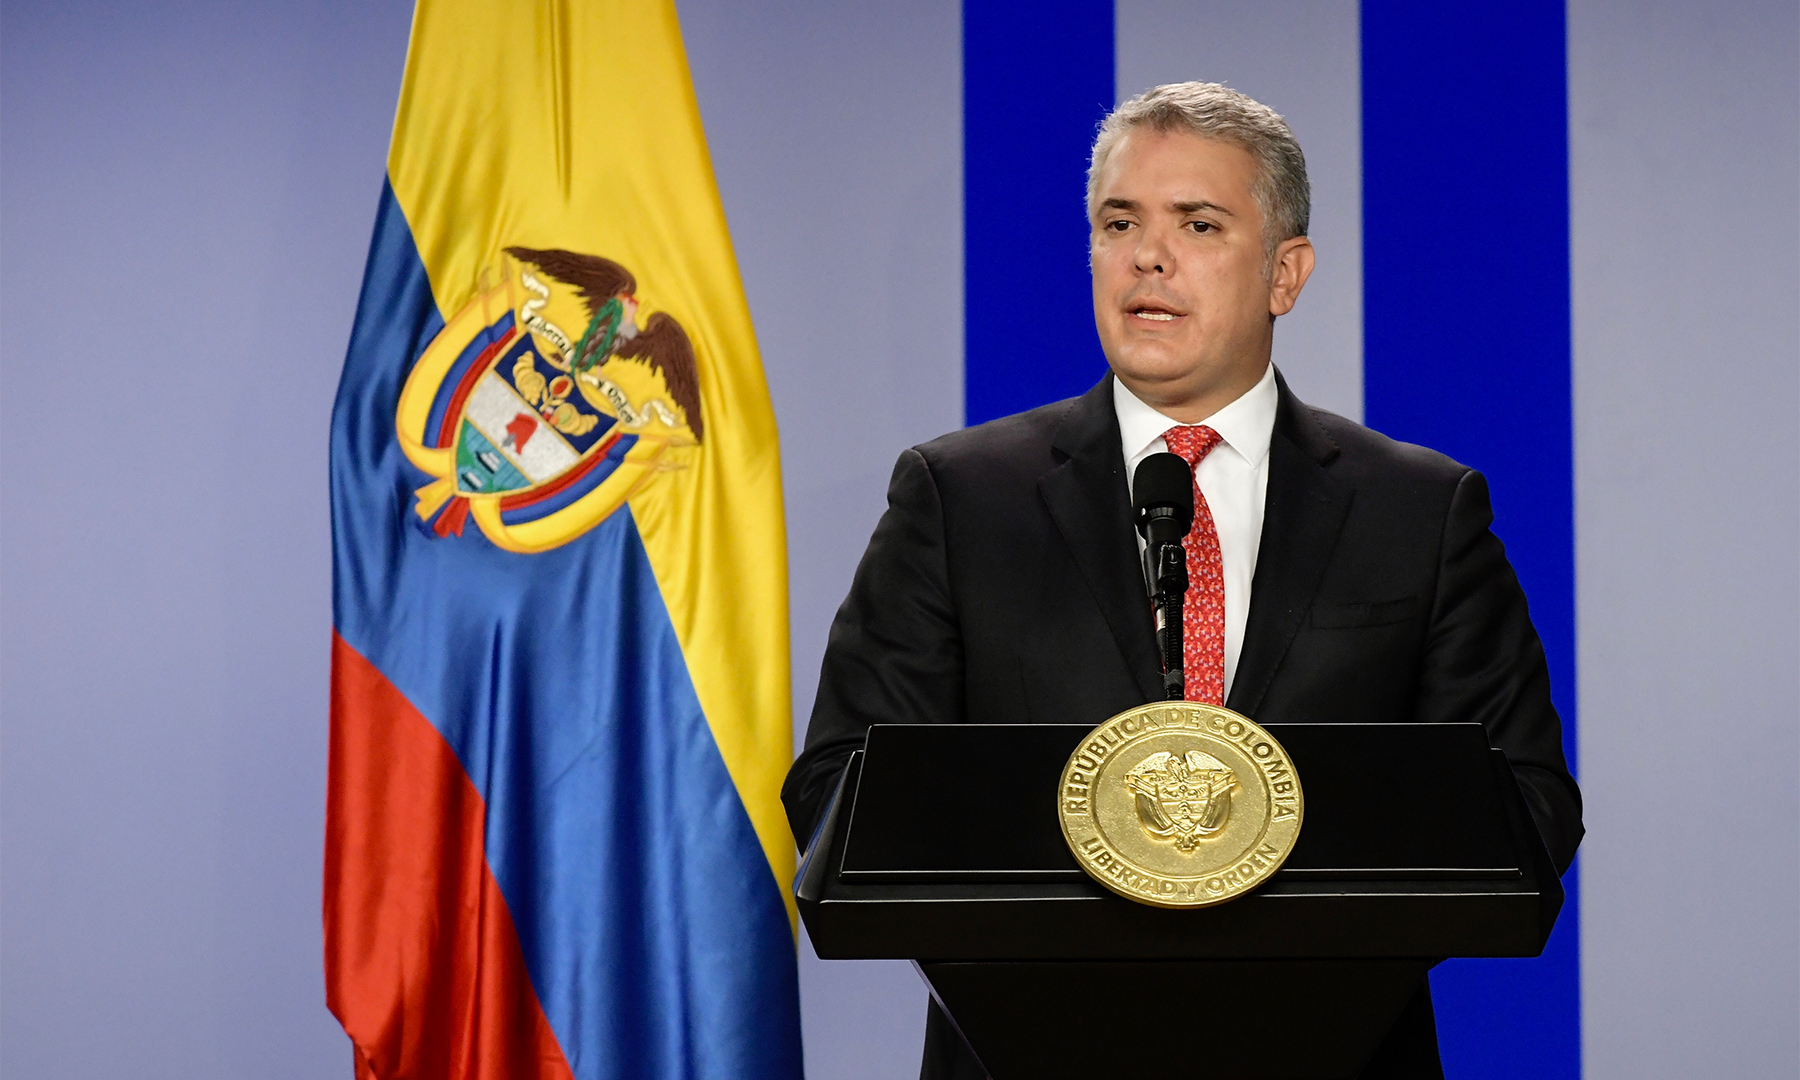 Presidente Duque anuncia ingreso solidario para 3 millones de familias colombianas que no están cubiertas por programas sociales